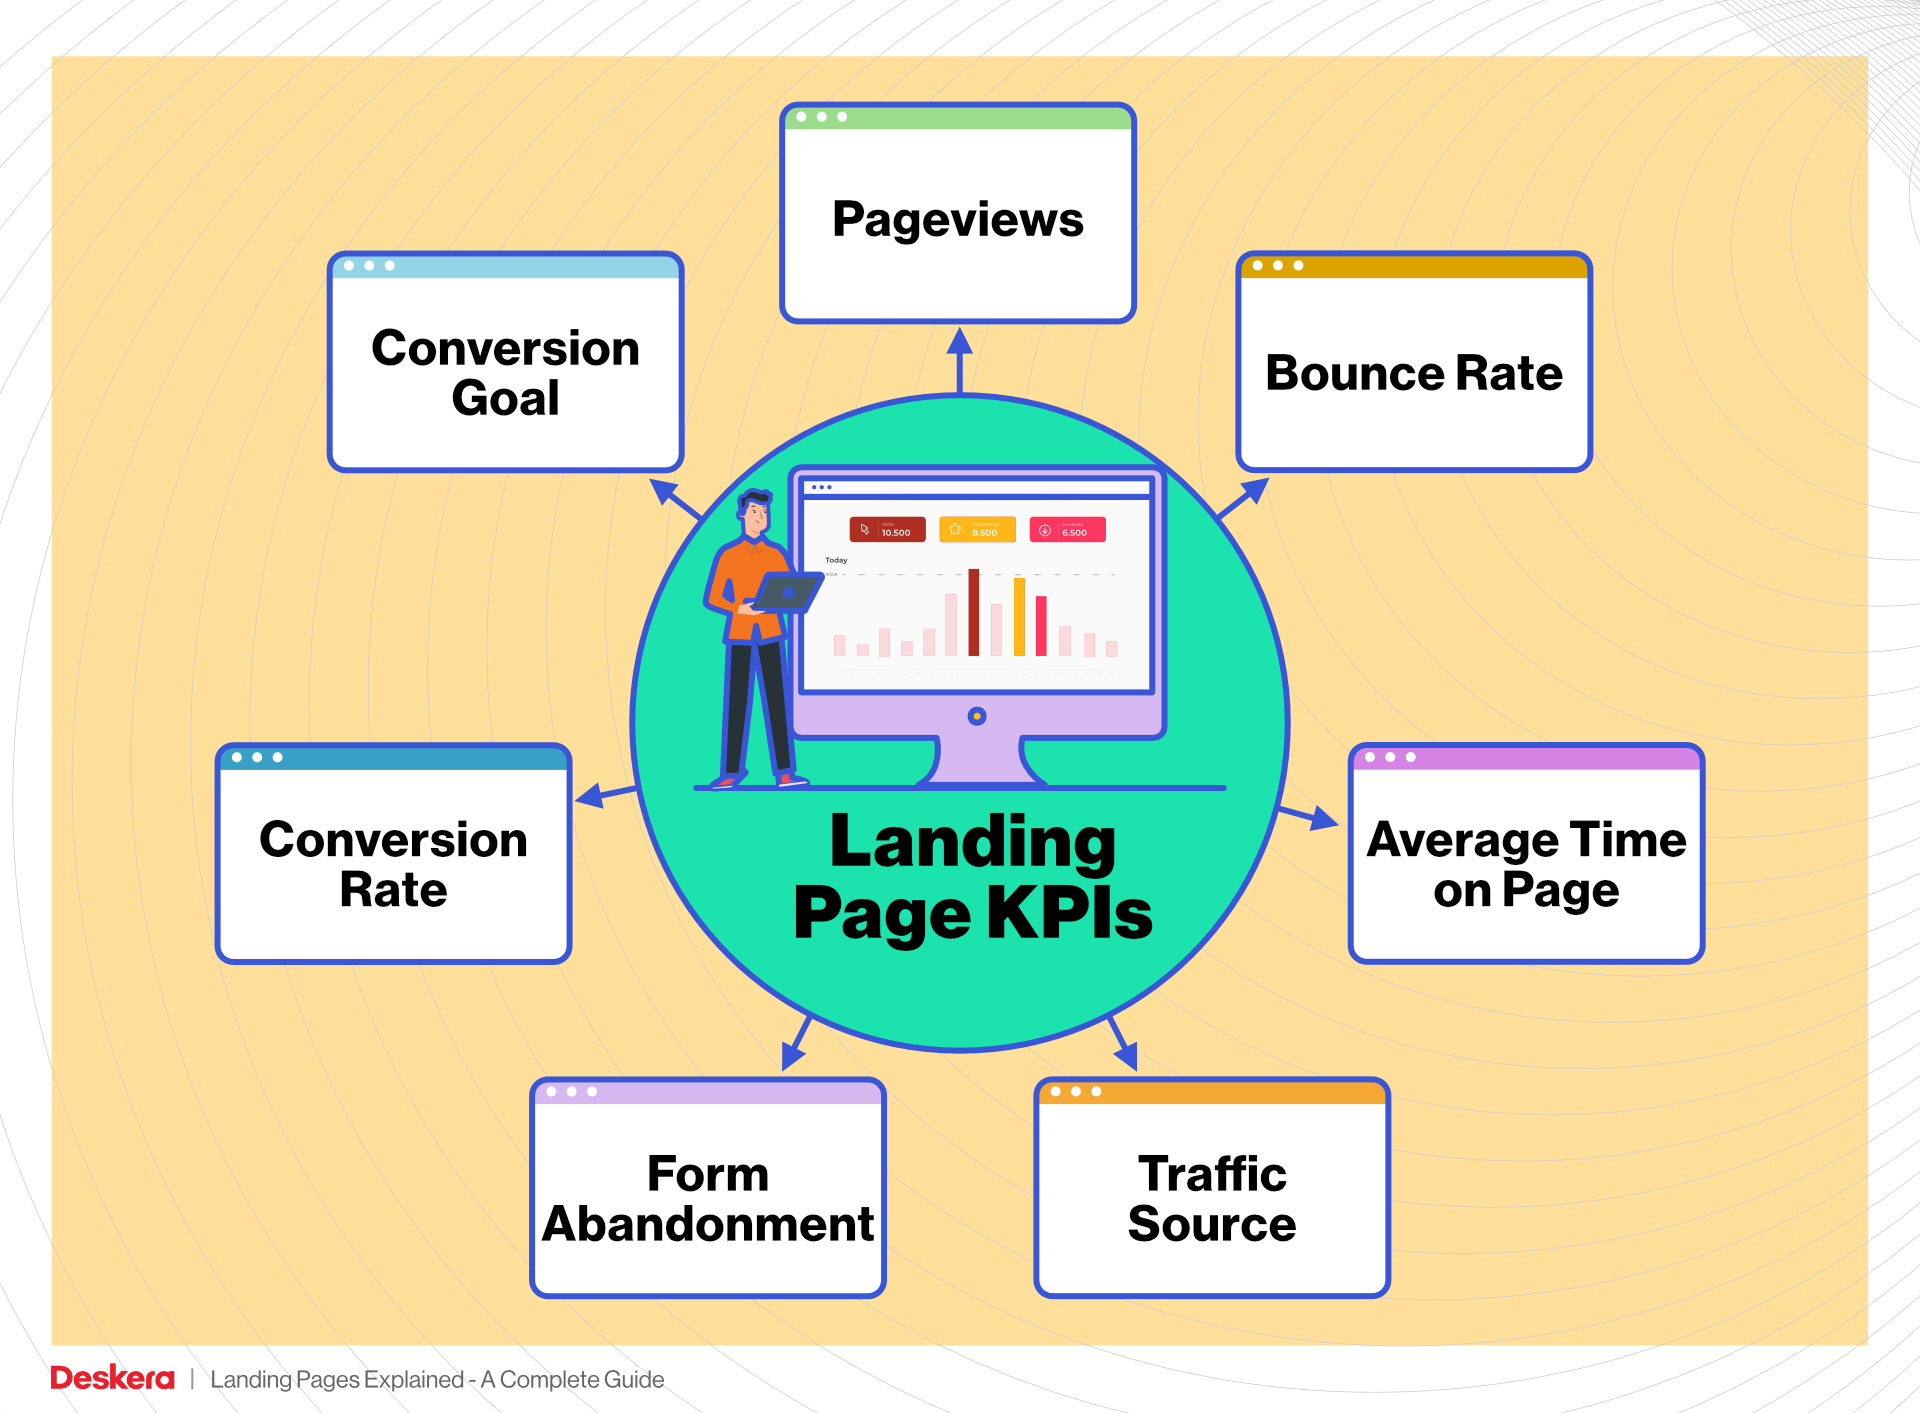 Landing Page KPIs